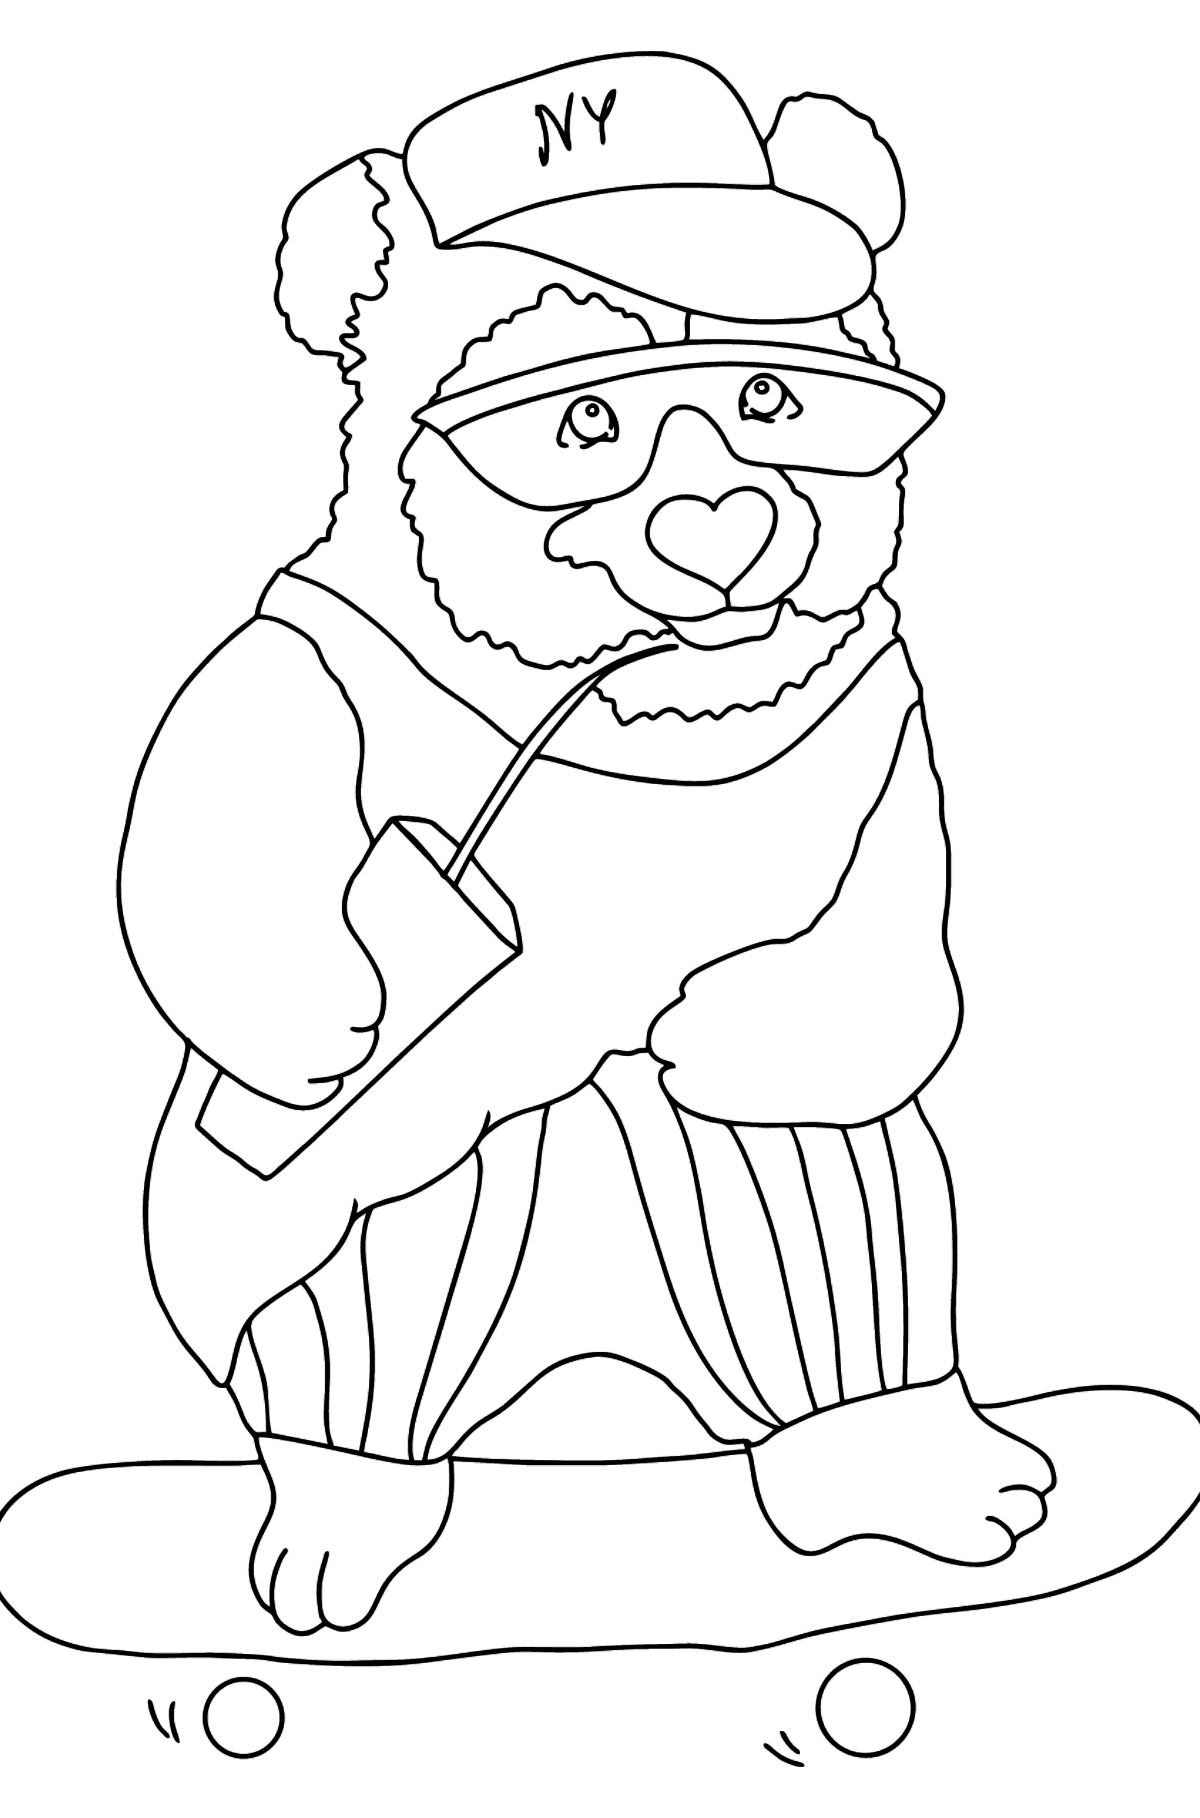 Tegning til fargelegging glad panda (vanskelig) - Tegninger til fargelegging for barn